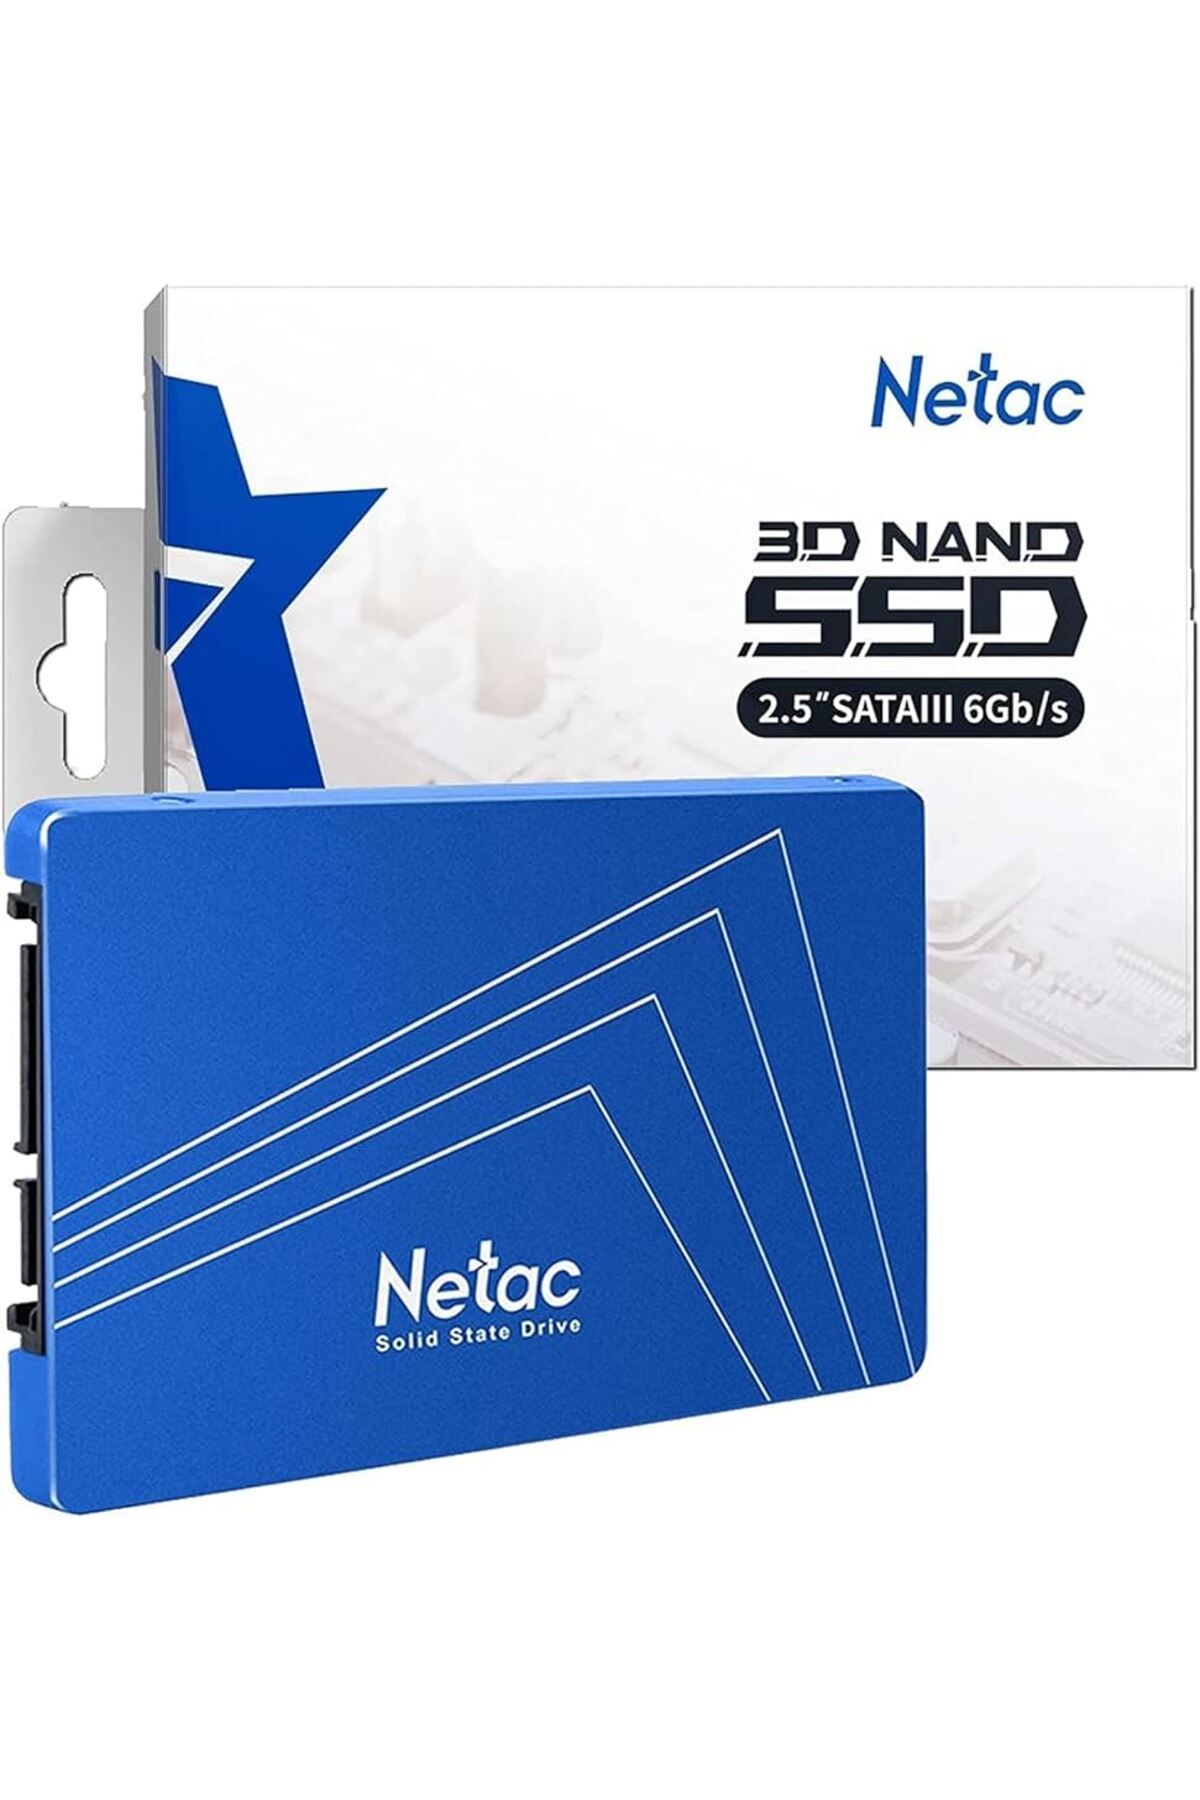 DTS Teknoloji Netac N535S 960GB 2.5 SATA3.0 550MB/460MB 3D NAND Flash SSD (Solid State Drive)